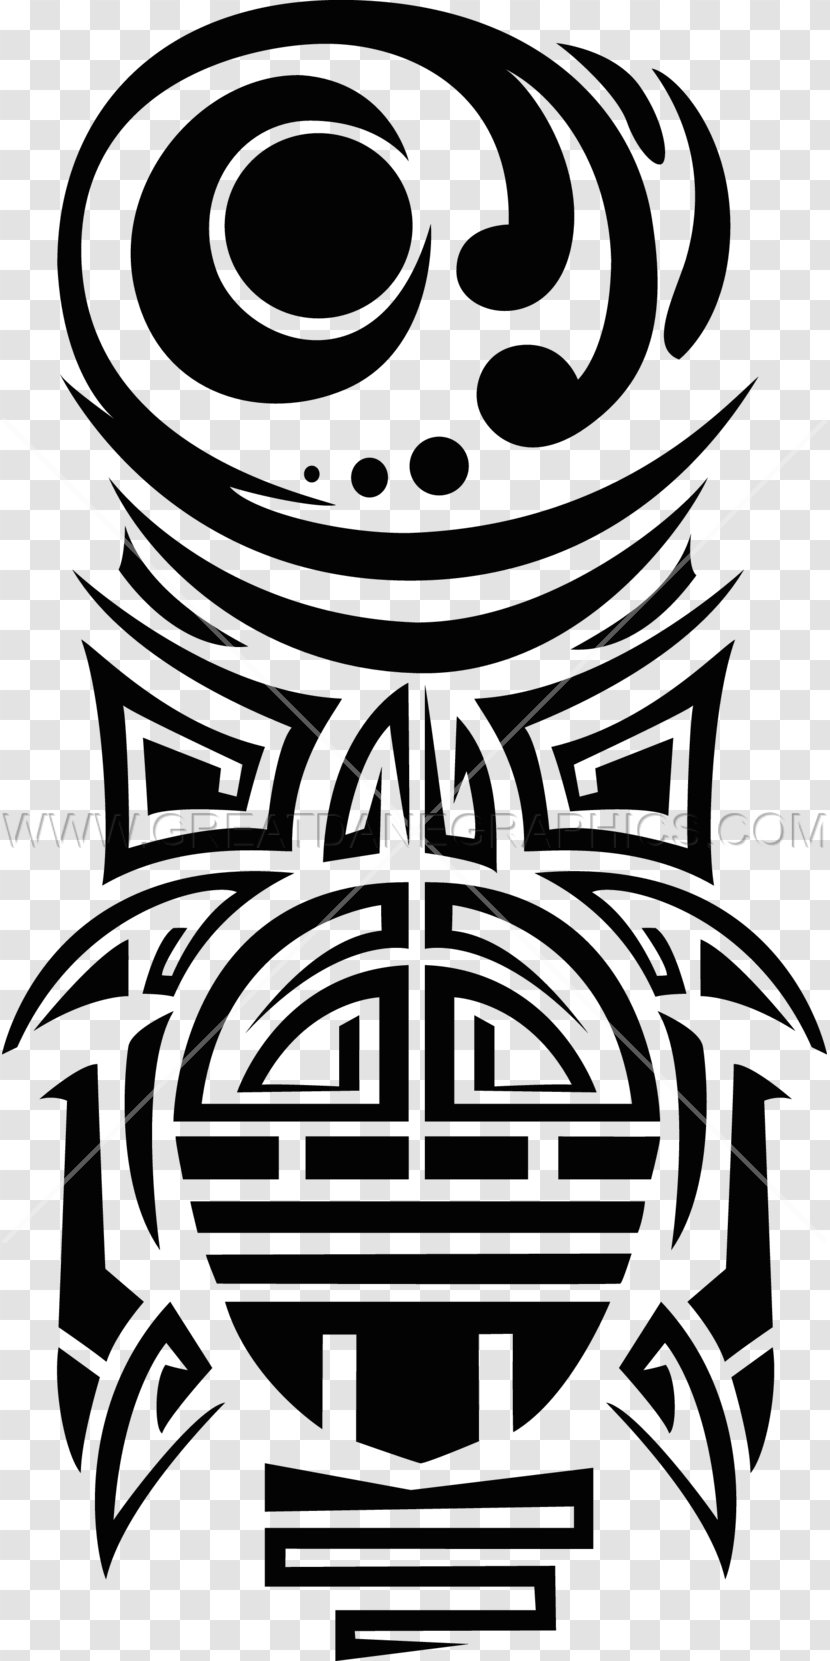 Turtle Totem Pole Clip Art - Monochrome Transparent PNG